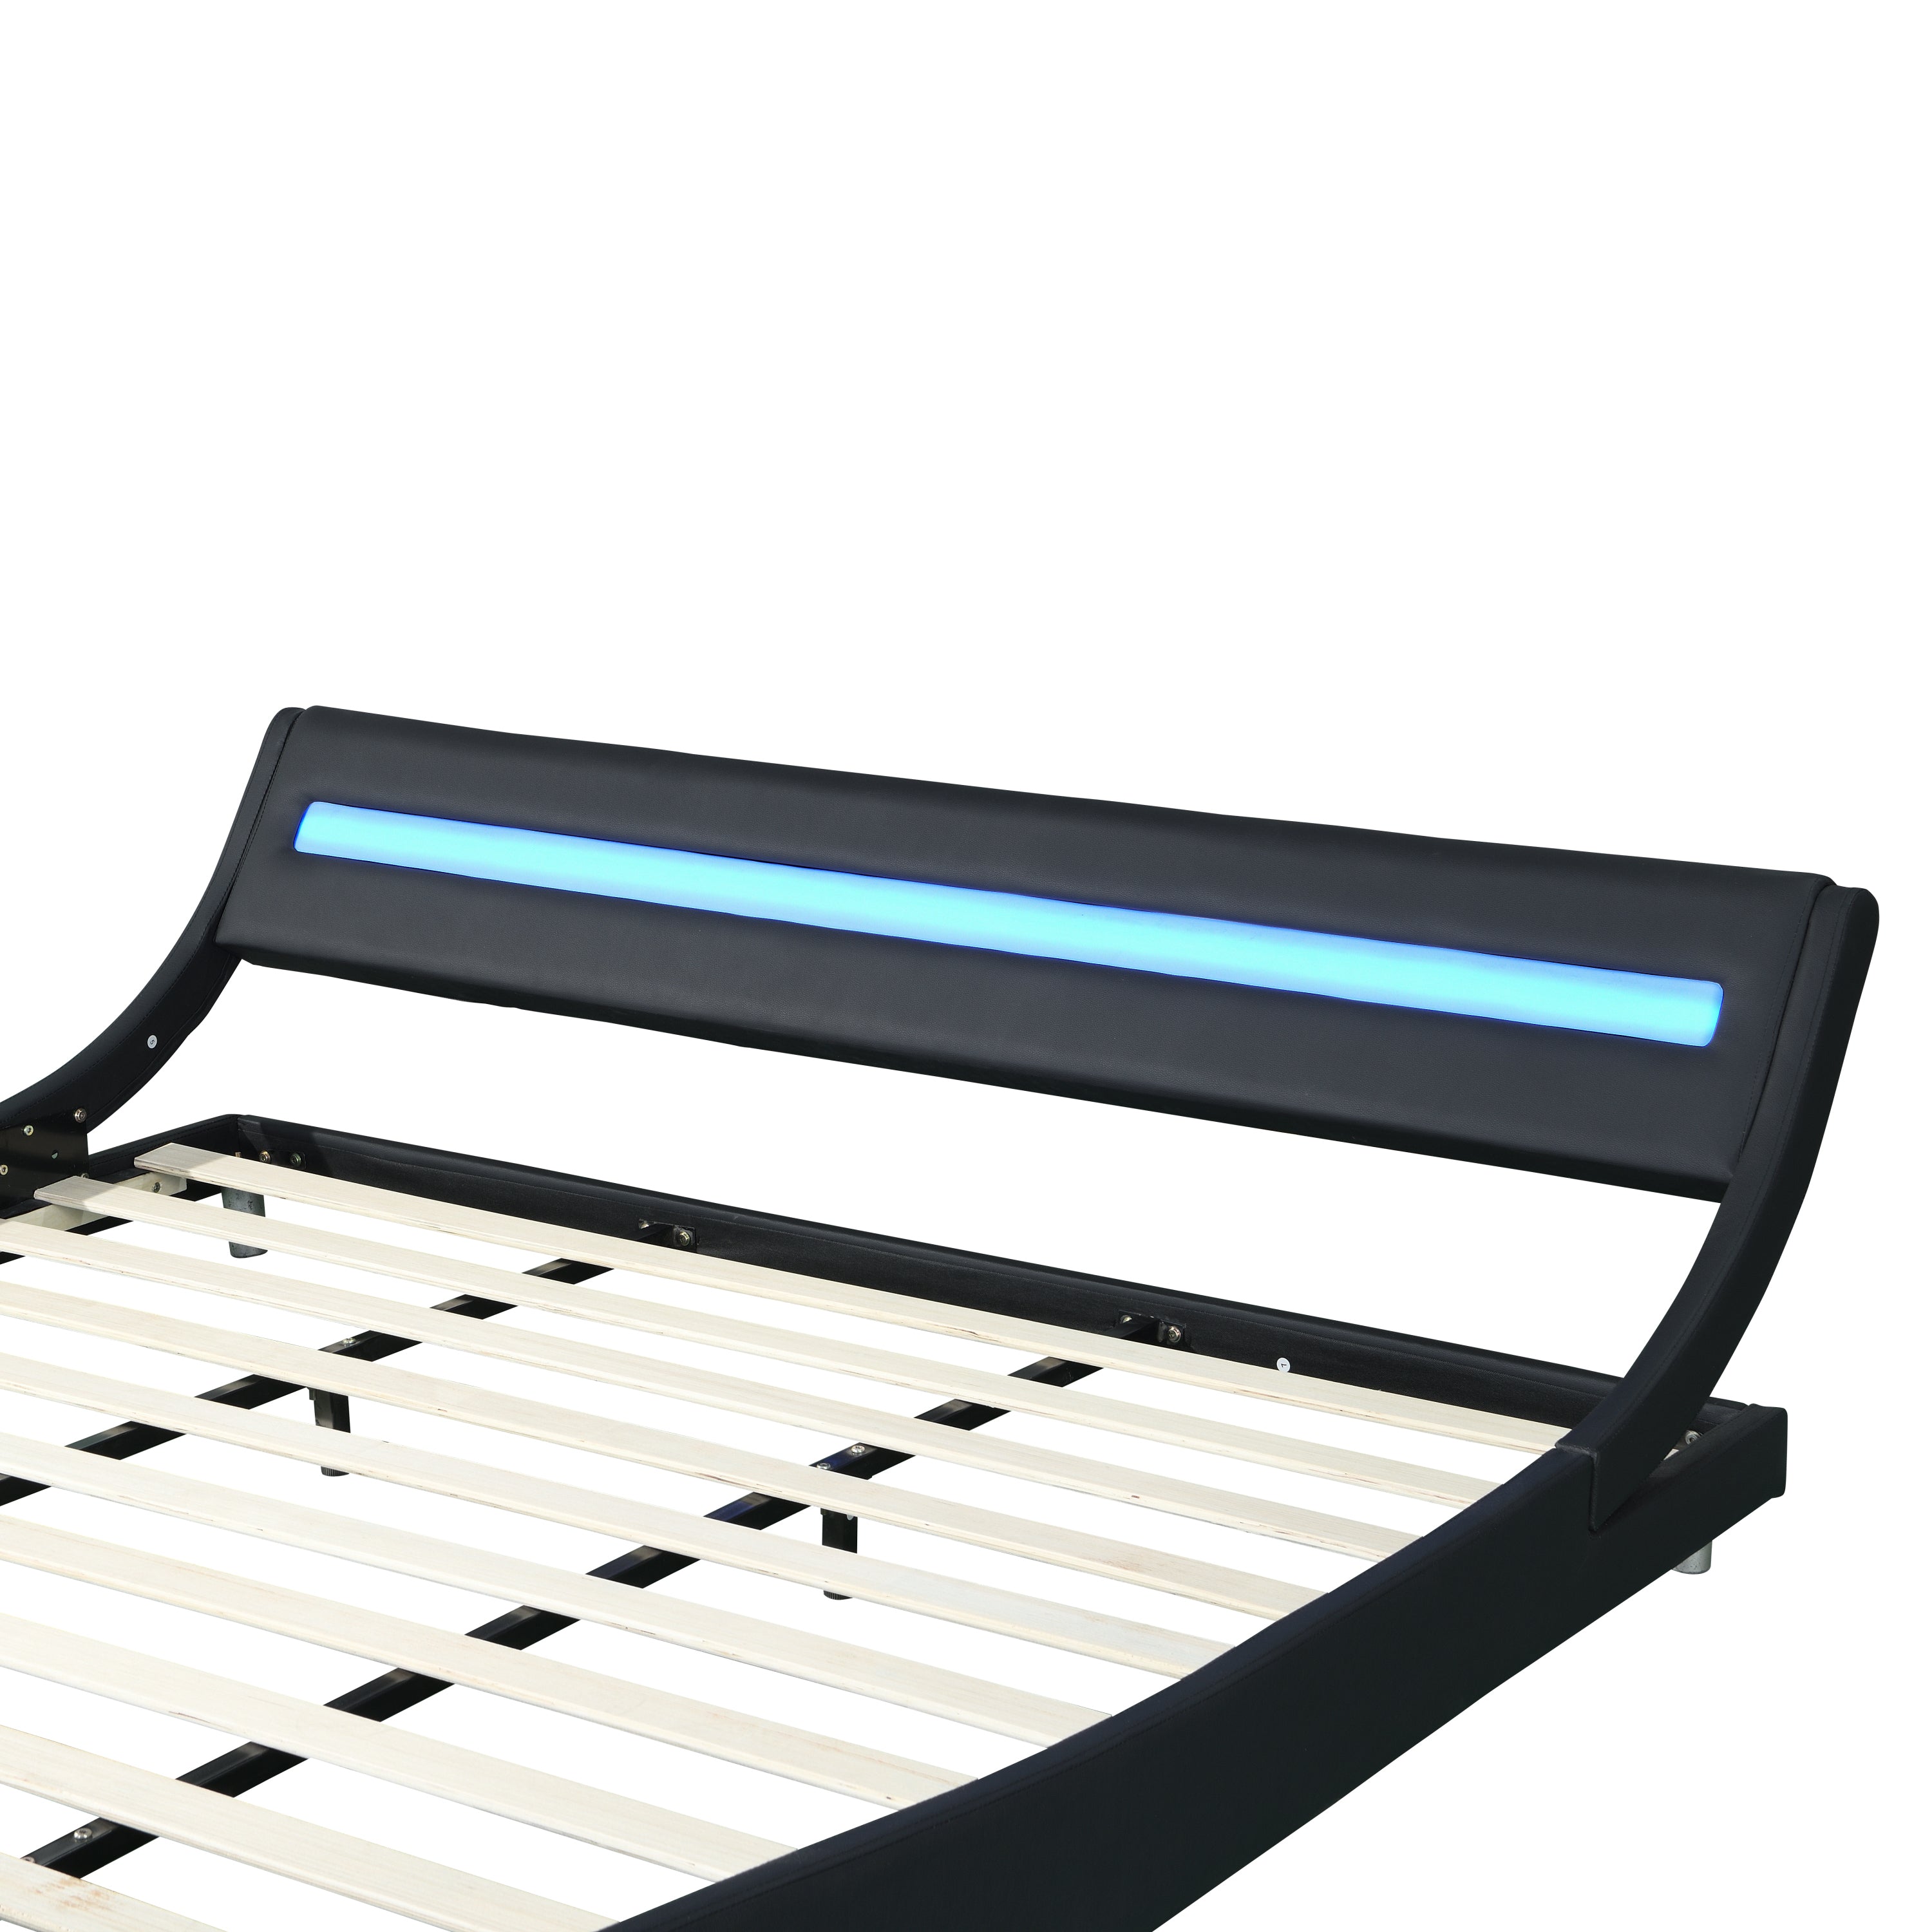 Faux Leather Upholstered Platform Bed Frame with Led Lighting King Size (Black)